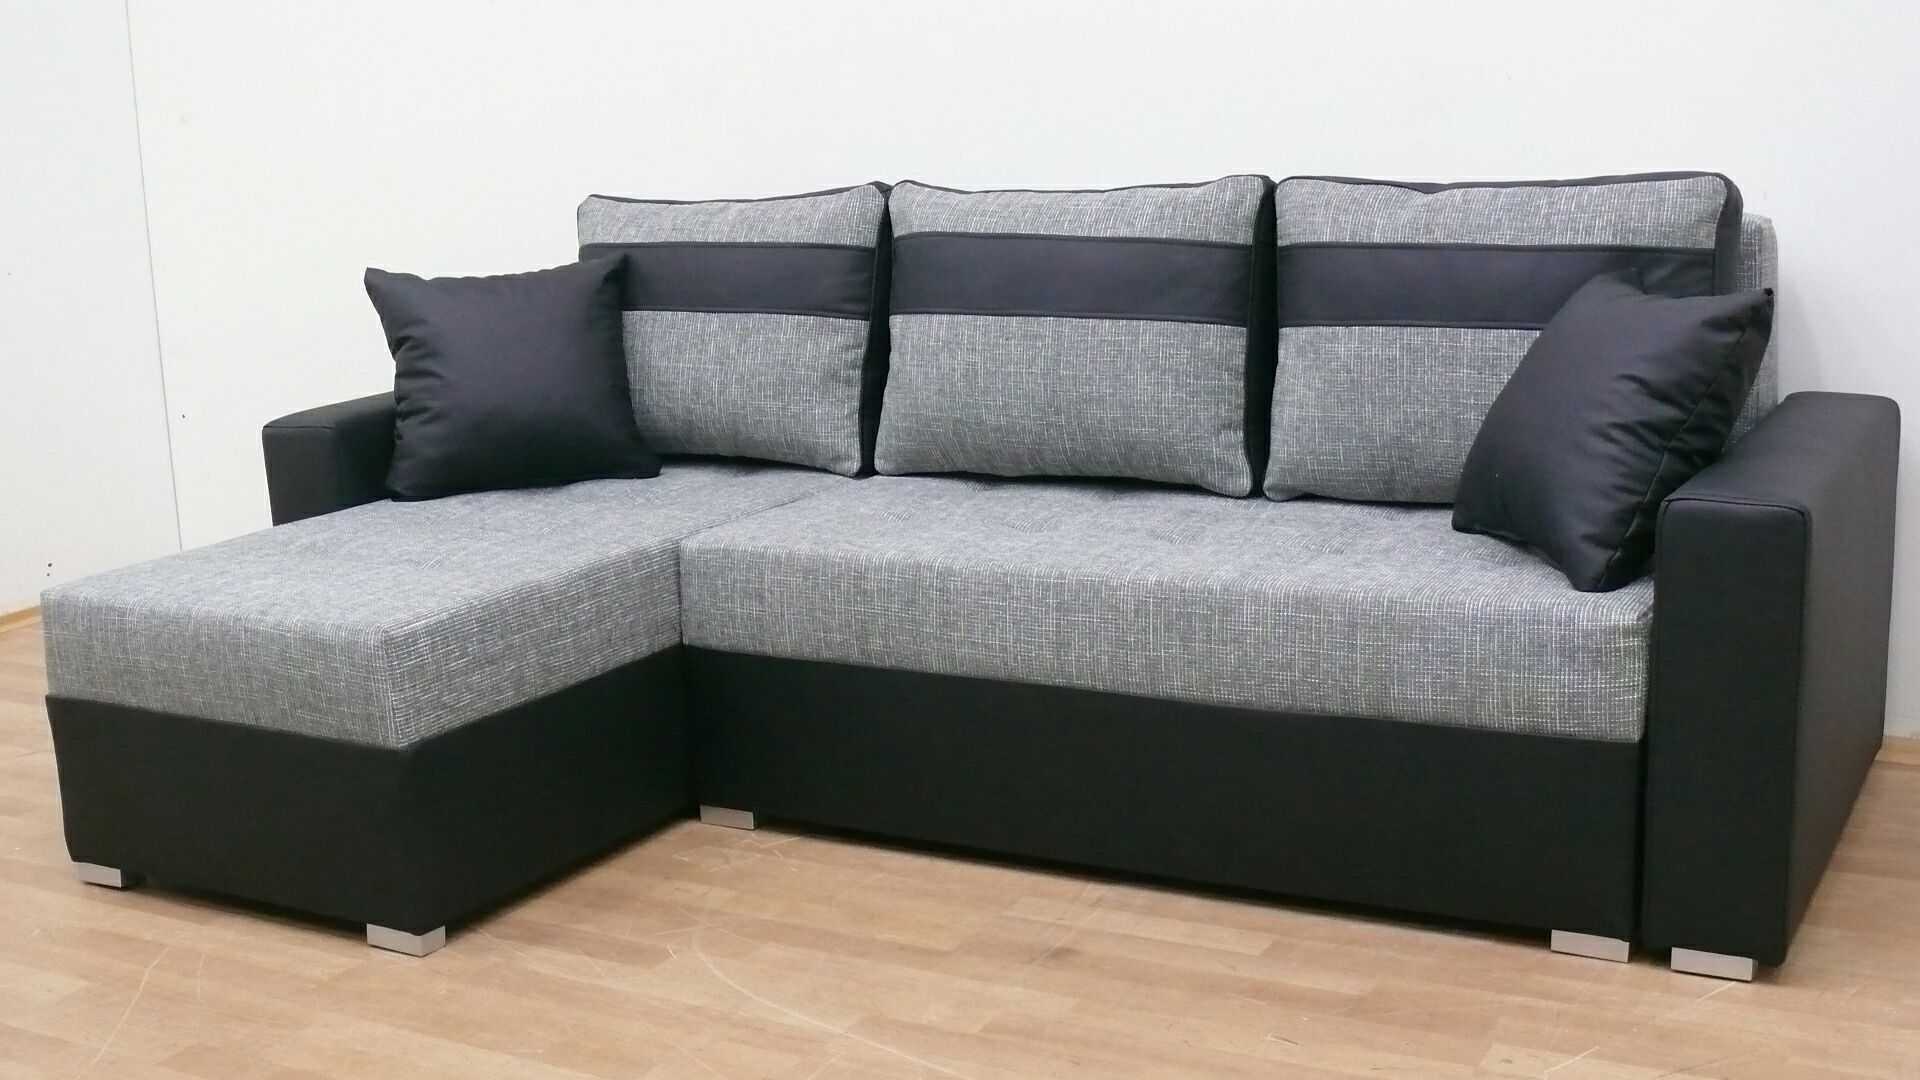 Nowy Narożnik w 24godz darmowy transport sofa kanapa rogówka wersalka